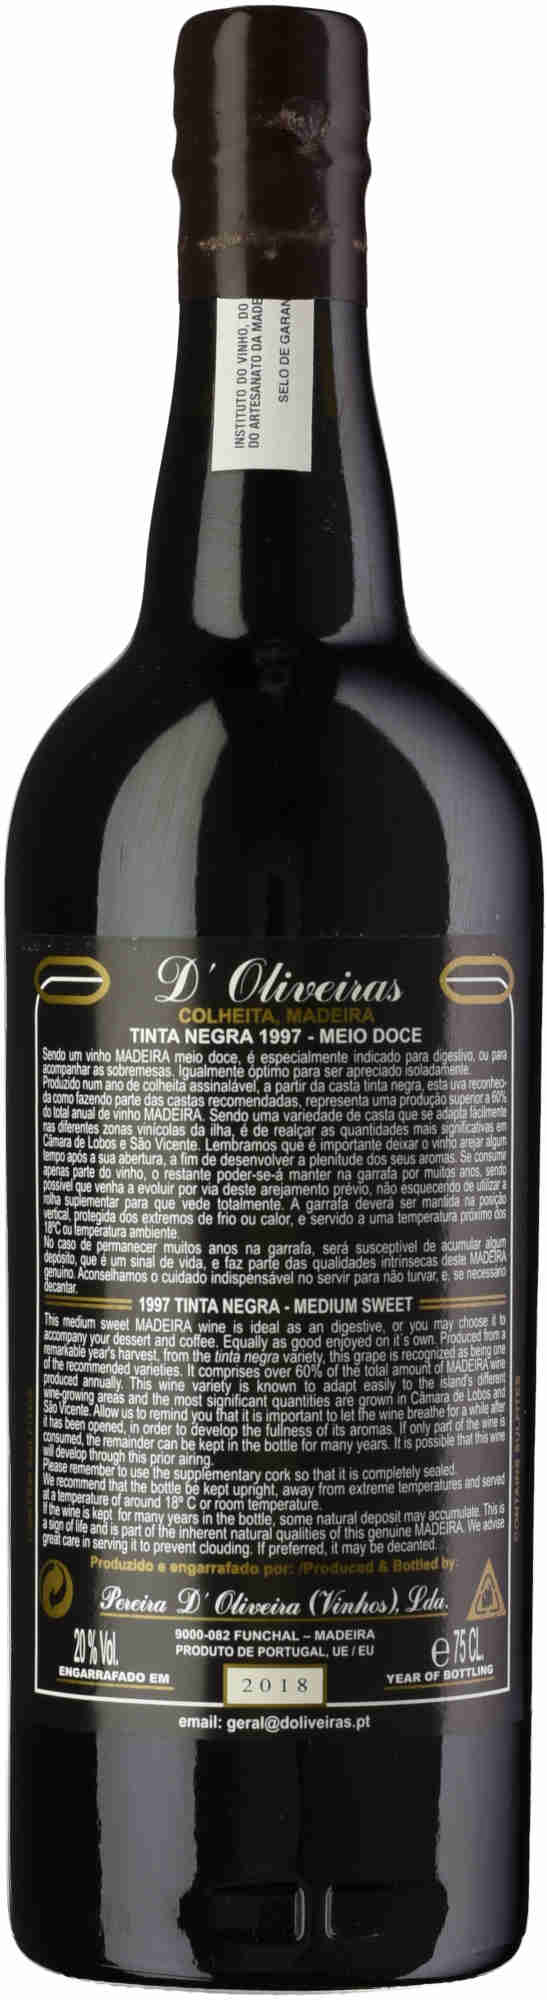 D-Oliveira-Tinta-Negra-1997-back